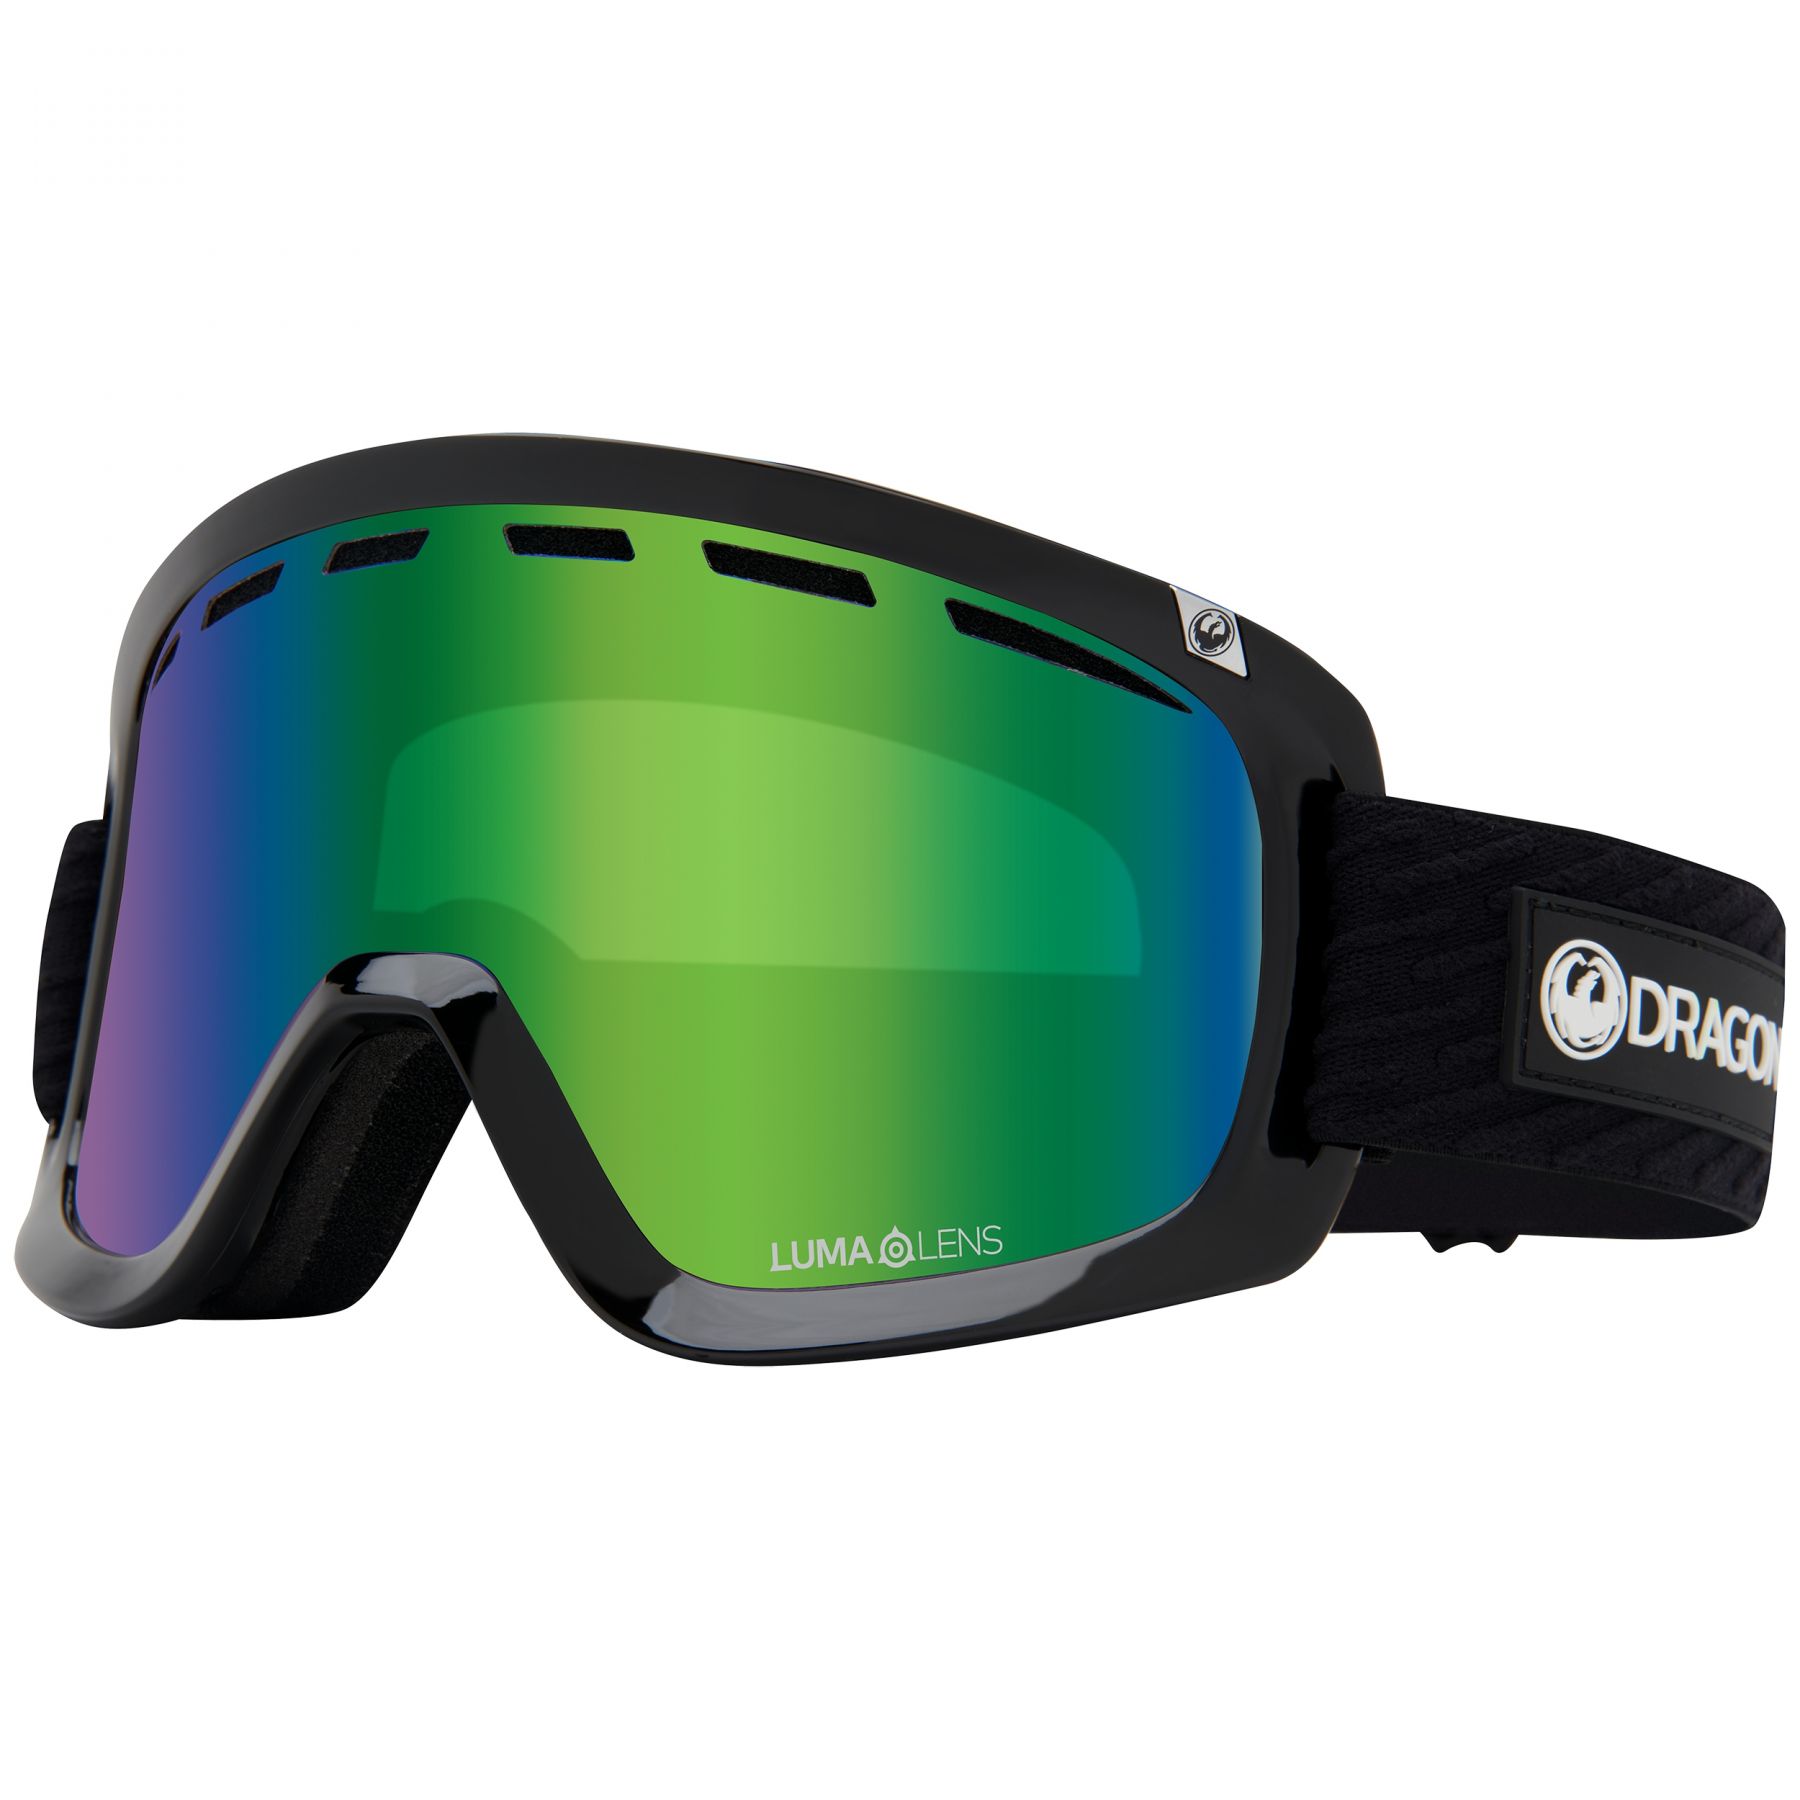 Billede af Dragon D1 OTG, skibriller, icon green hos Skisport.dk